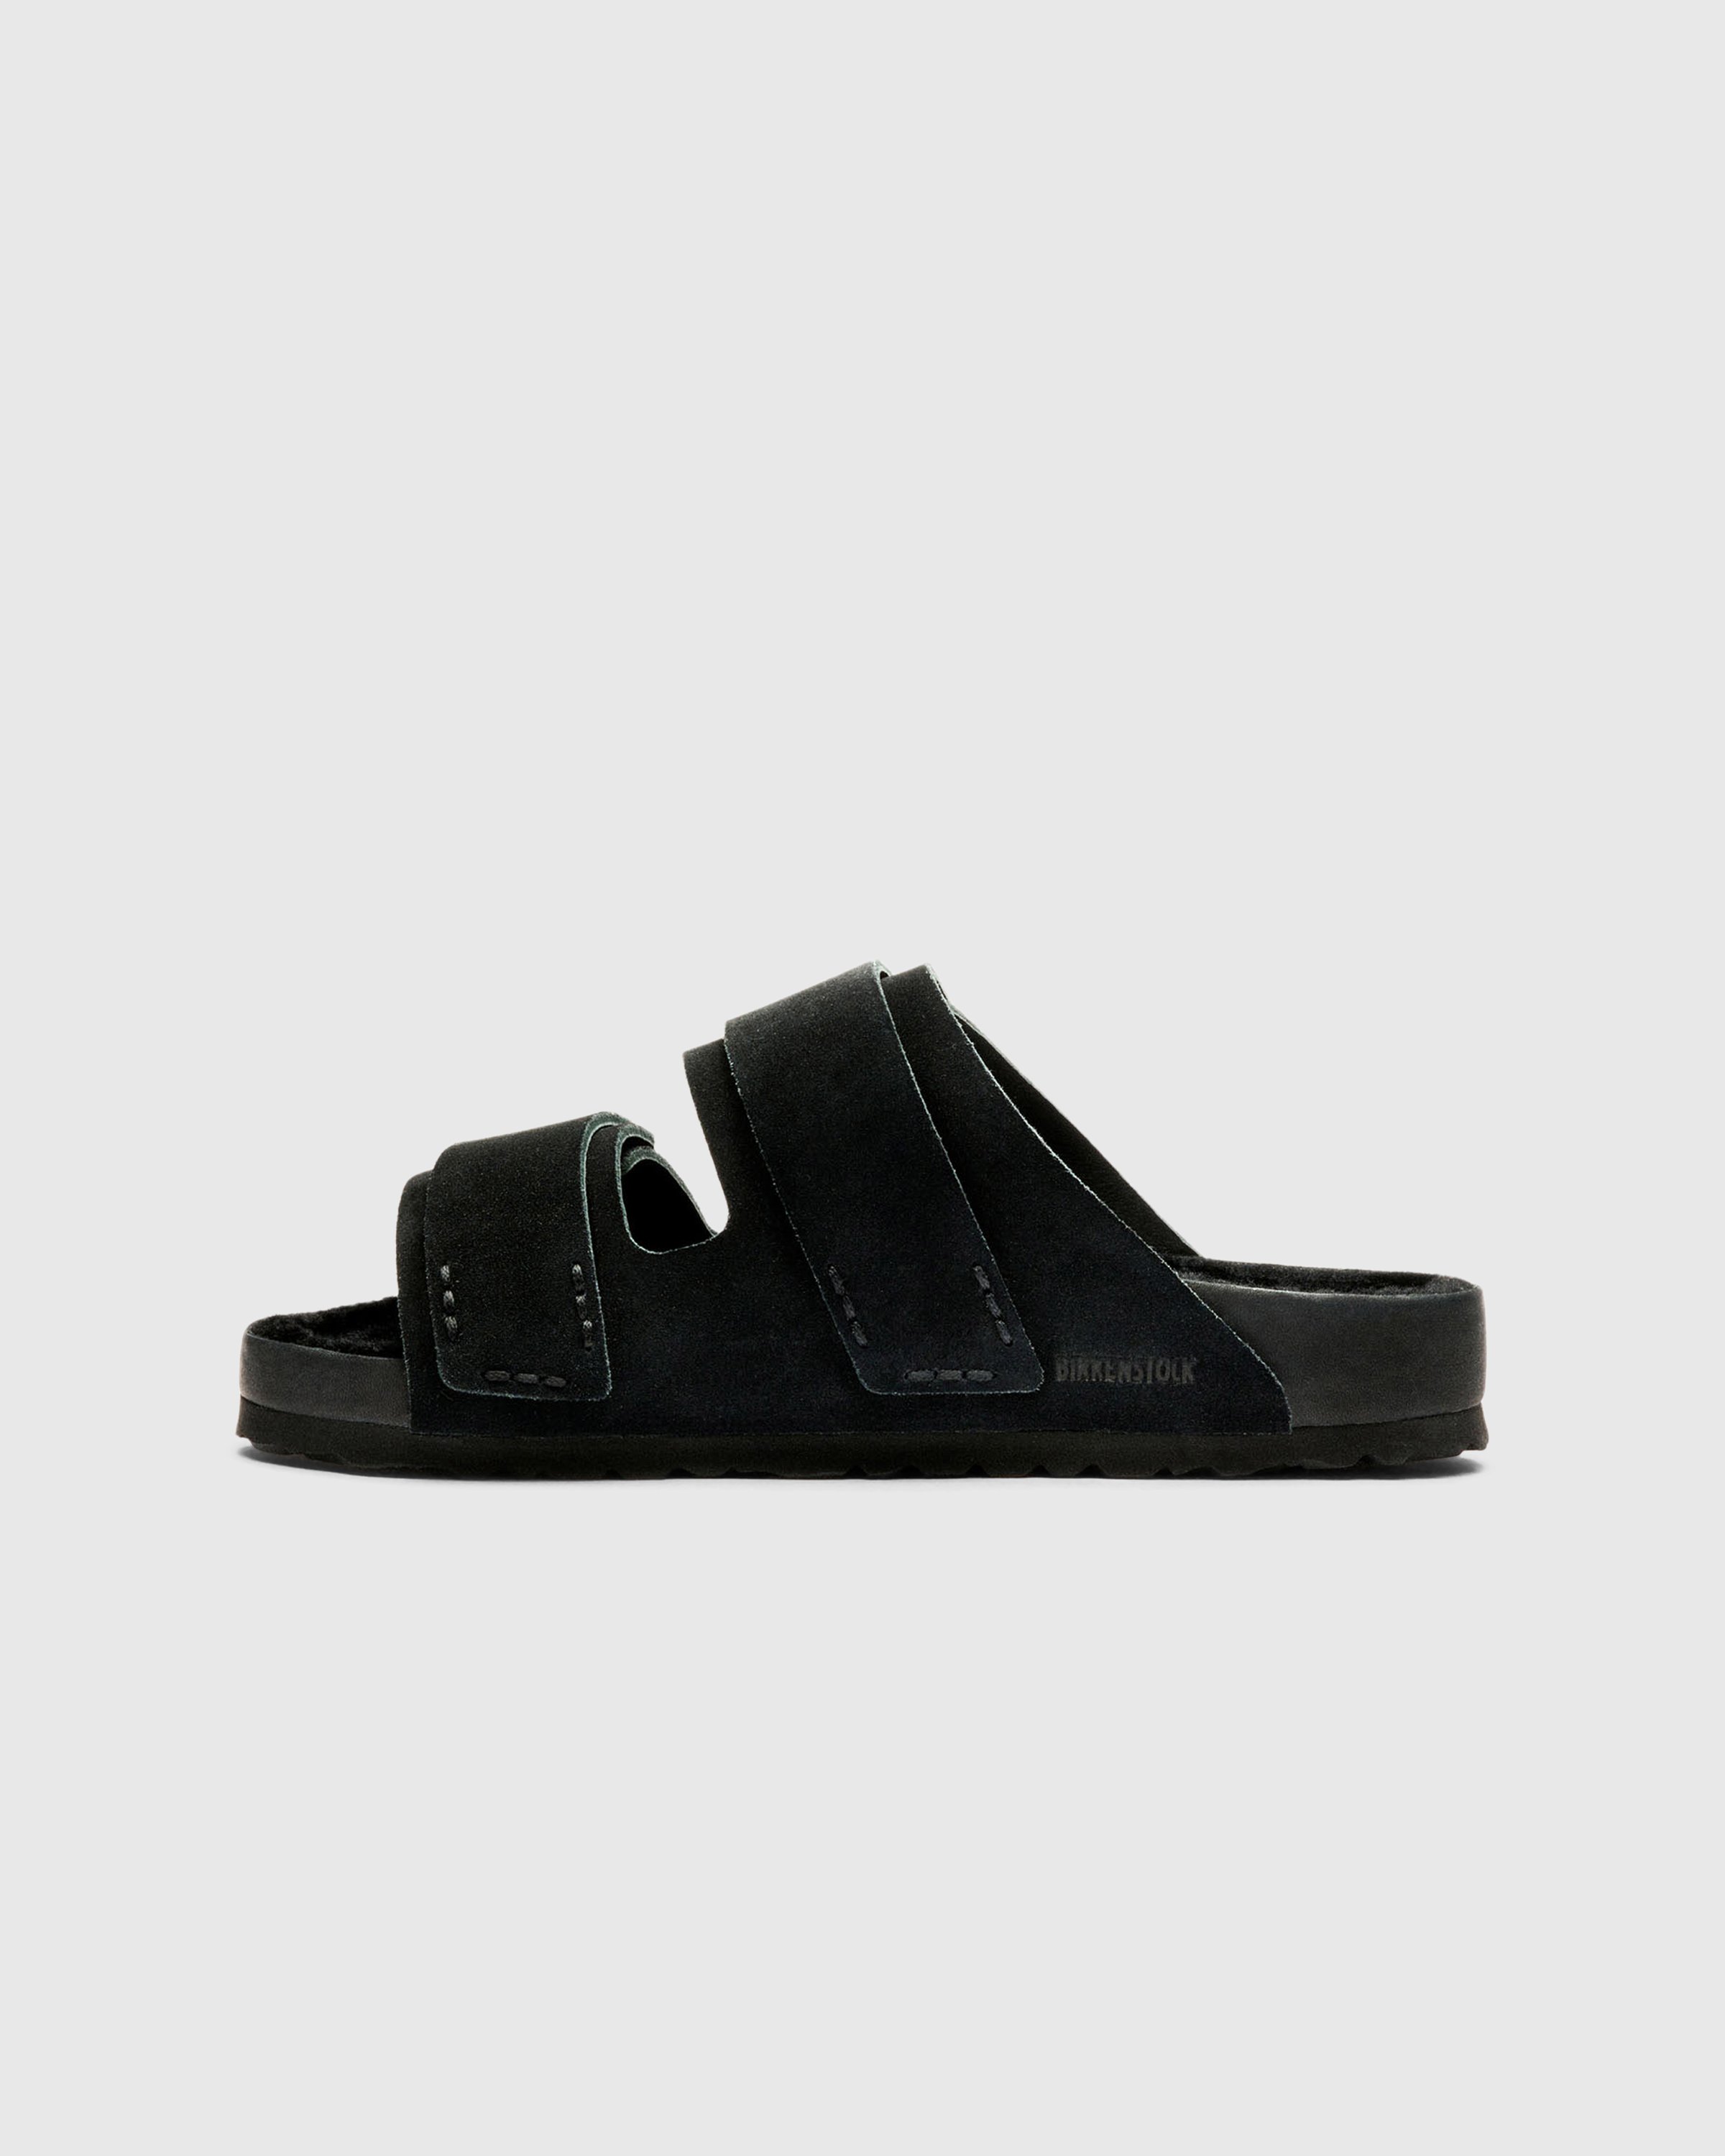 Birkenstock x Tekla - Shearling Uji Slate/Black - Footwear - Black - Image 2